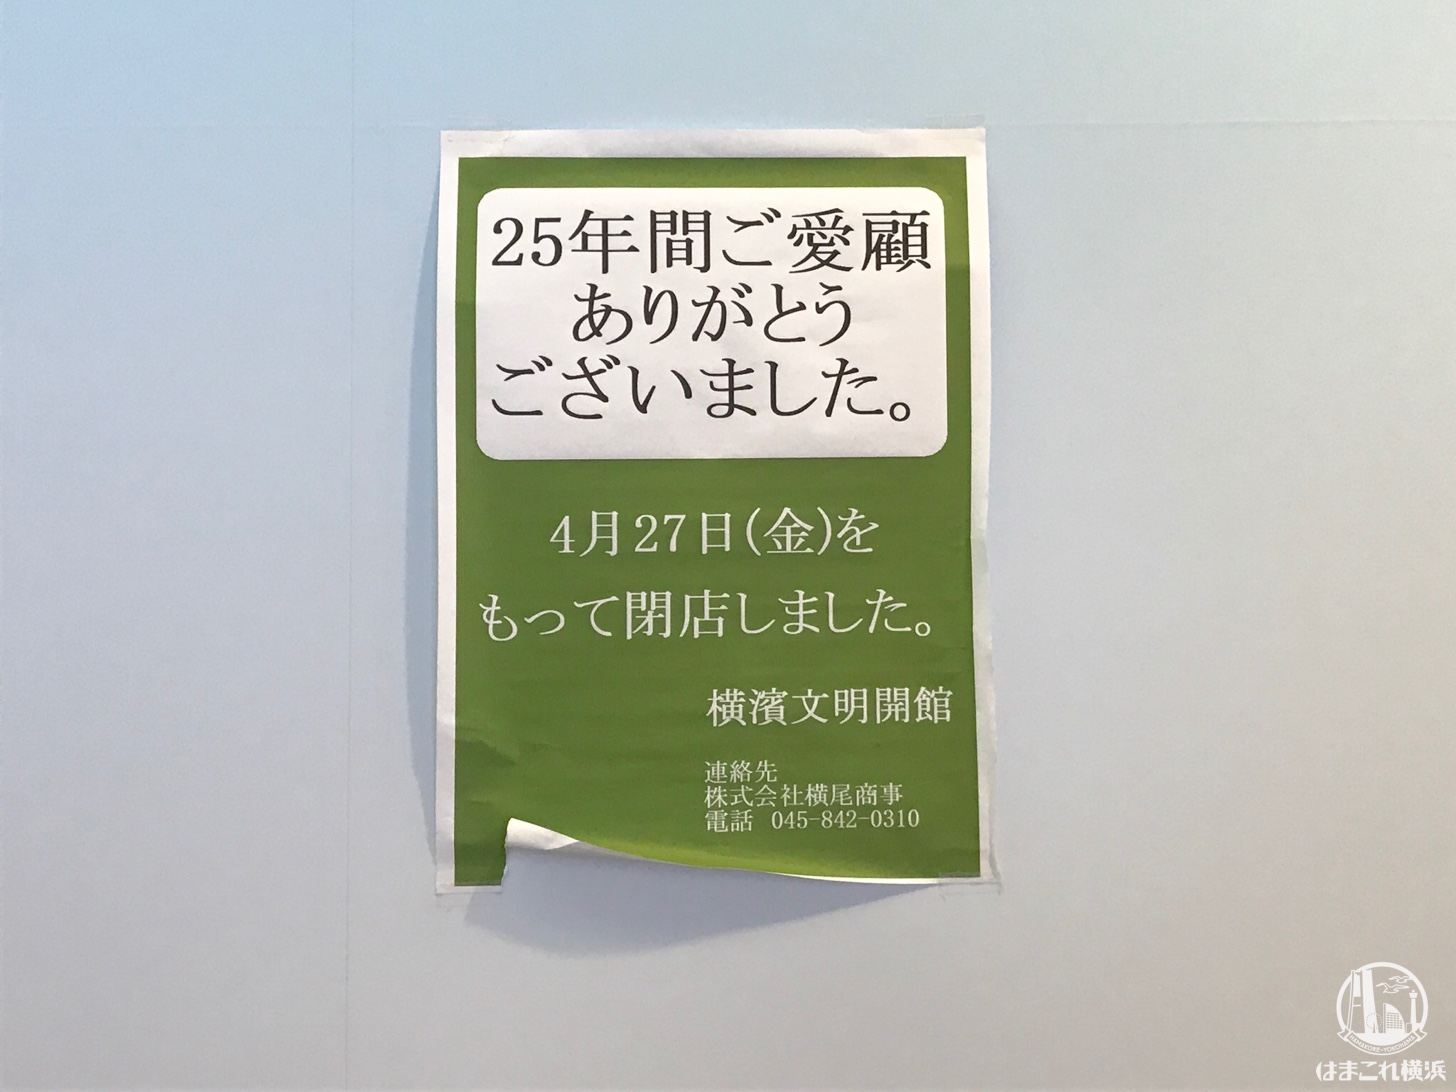 ランドマークプラザ「横濱文明開館」が閉店…